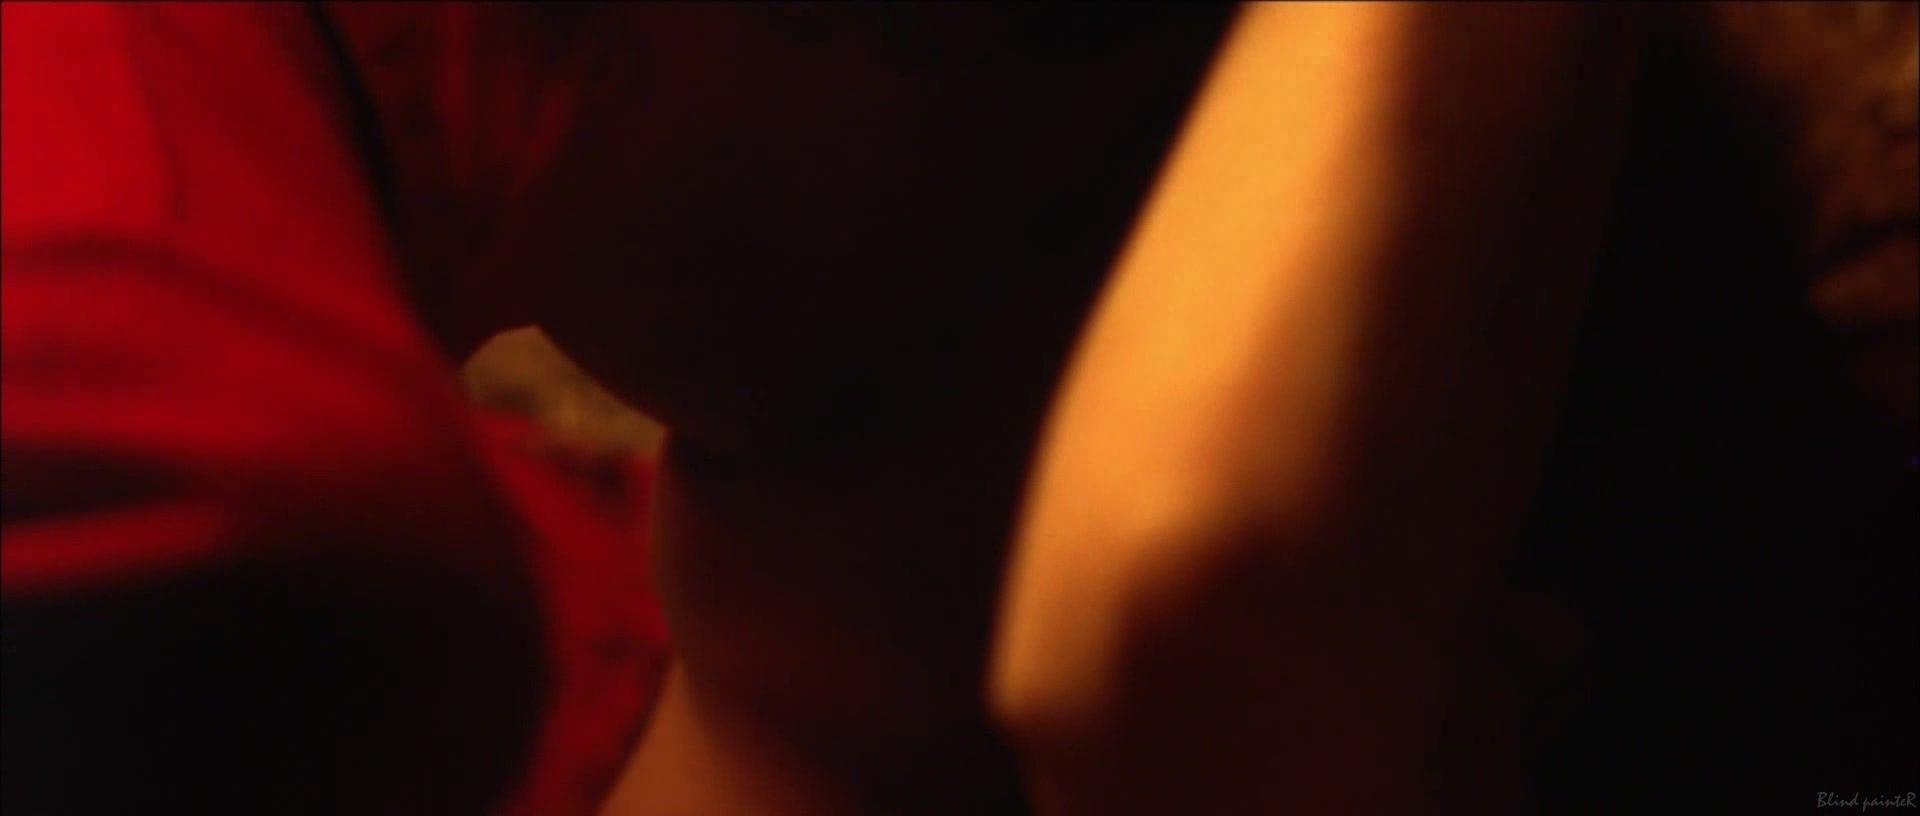 Buceta Liv Tyler nude - Stealing Beauty (1996) Skinny